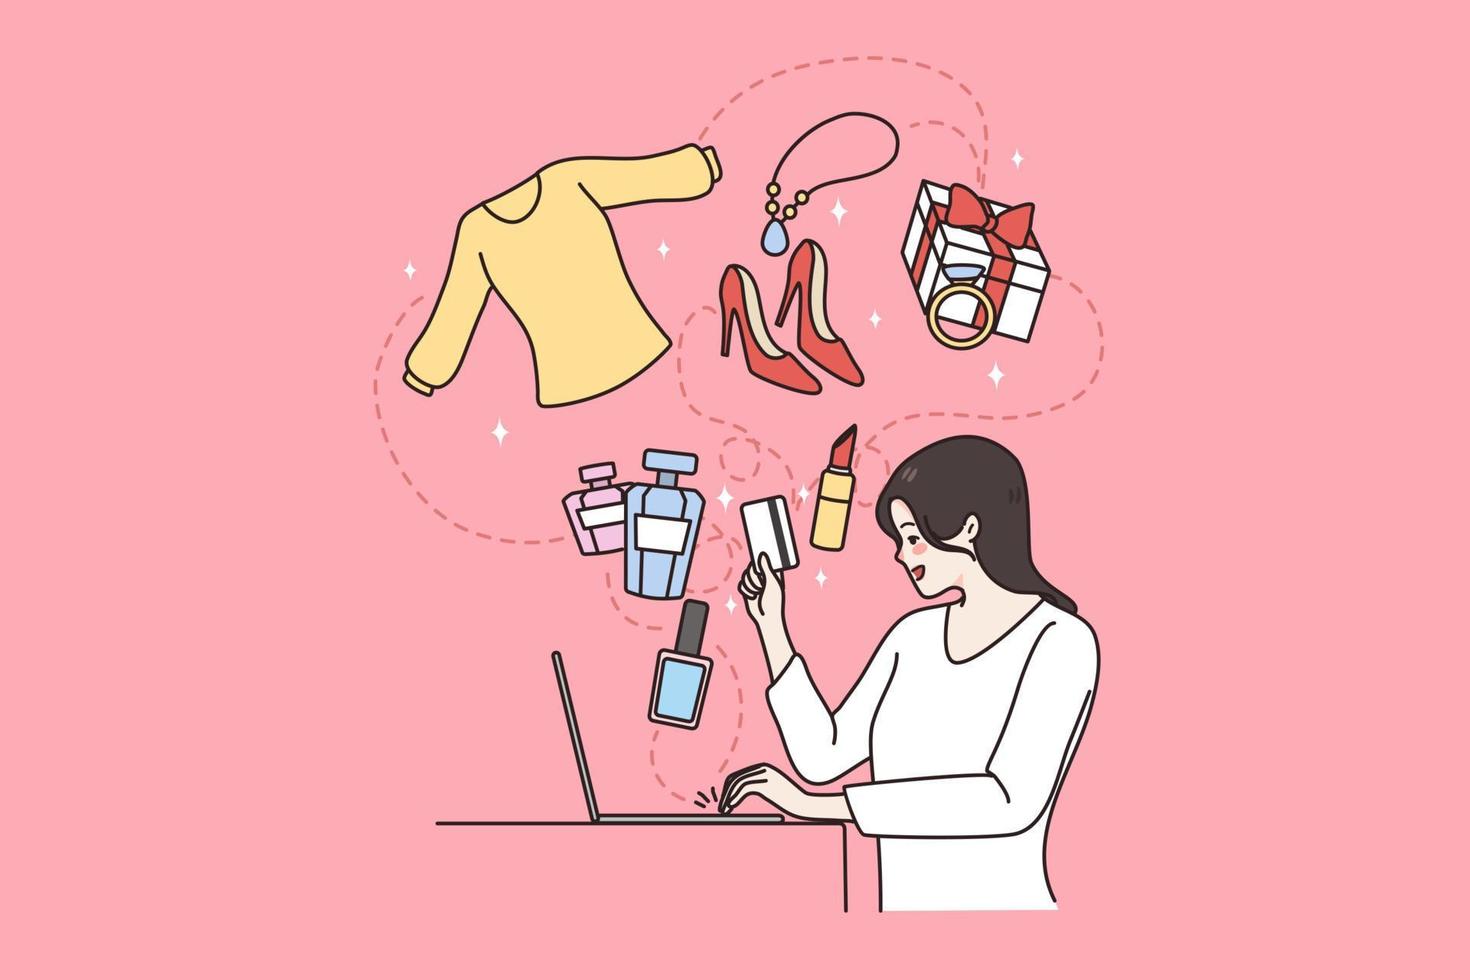 en línea compras y tecnologías concepto. joven sonriente mujer sentado a ordenador portátil compras en línea comprando ropa y belleza cosas vector ilustración